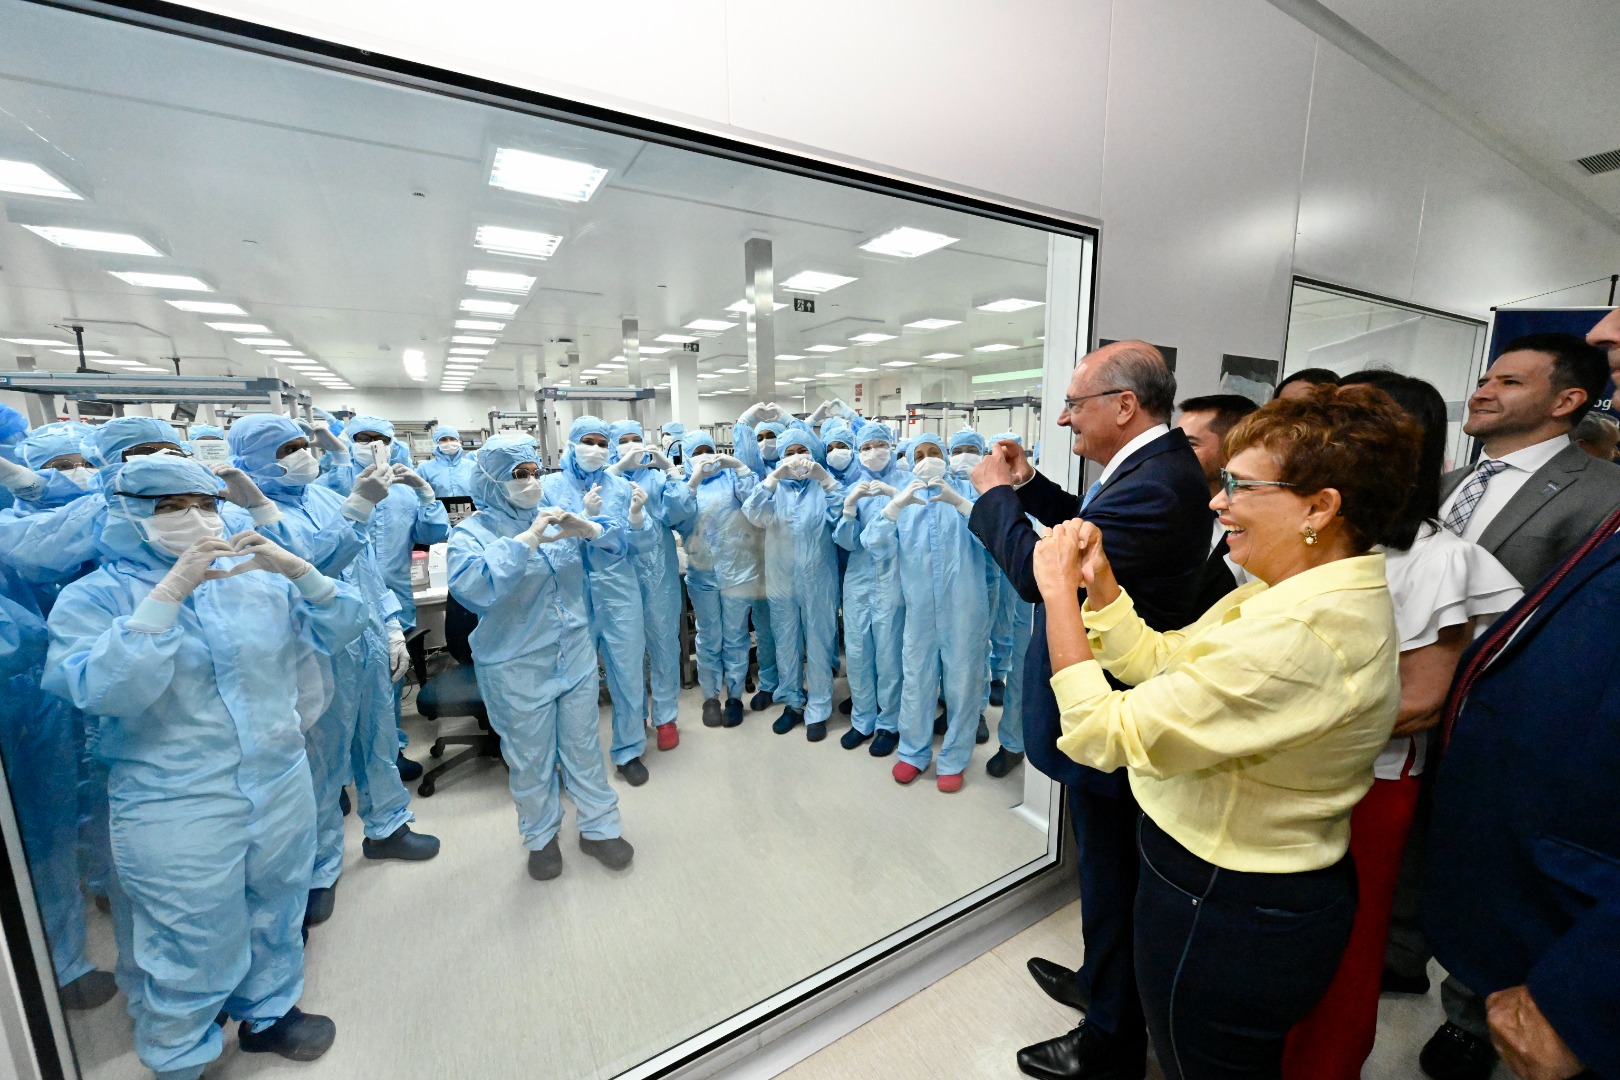 Alckmin participou de inauguração de ampliação da fábrica da Boston Scientific em Contagem (MG), que triplicará capacidade de produção e tem foco no mercado internacional